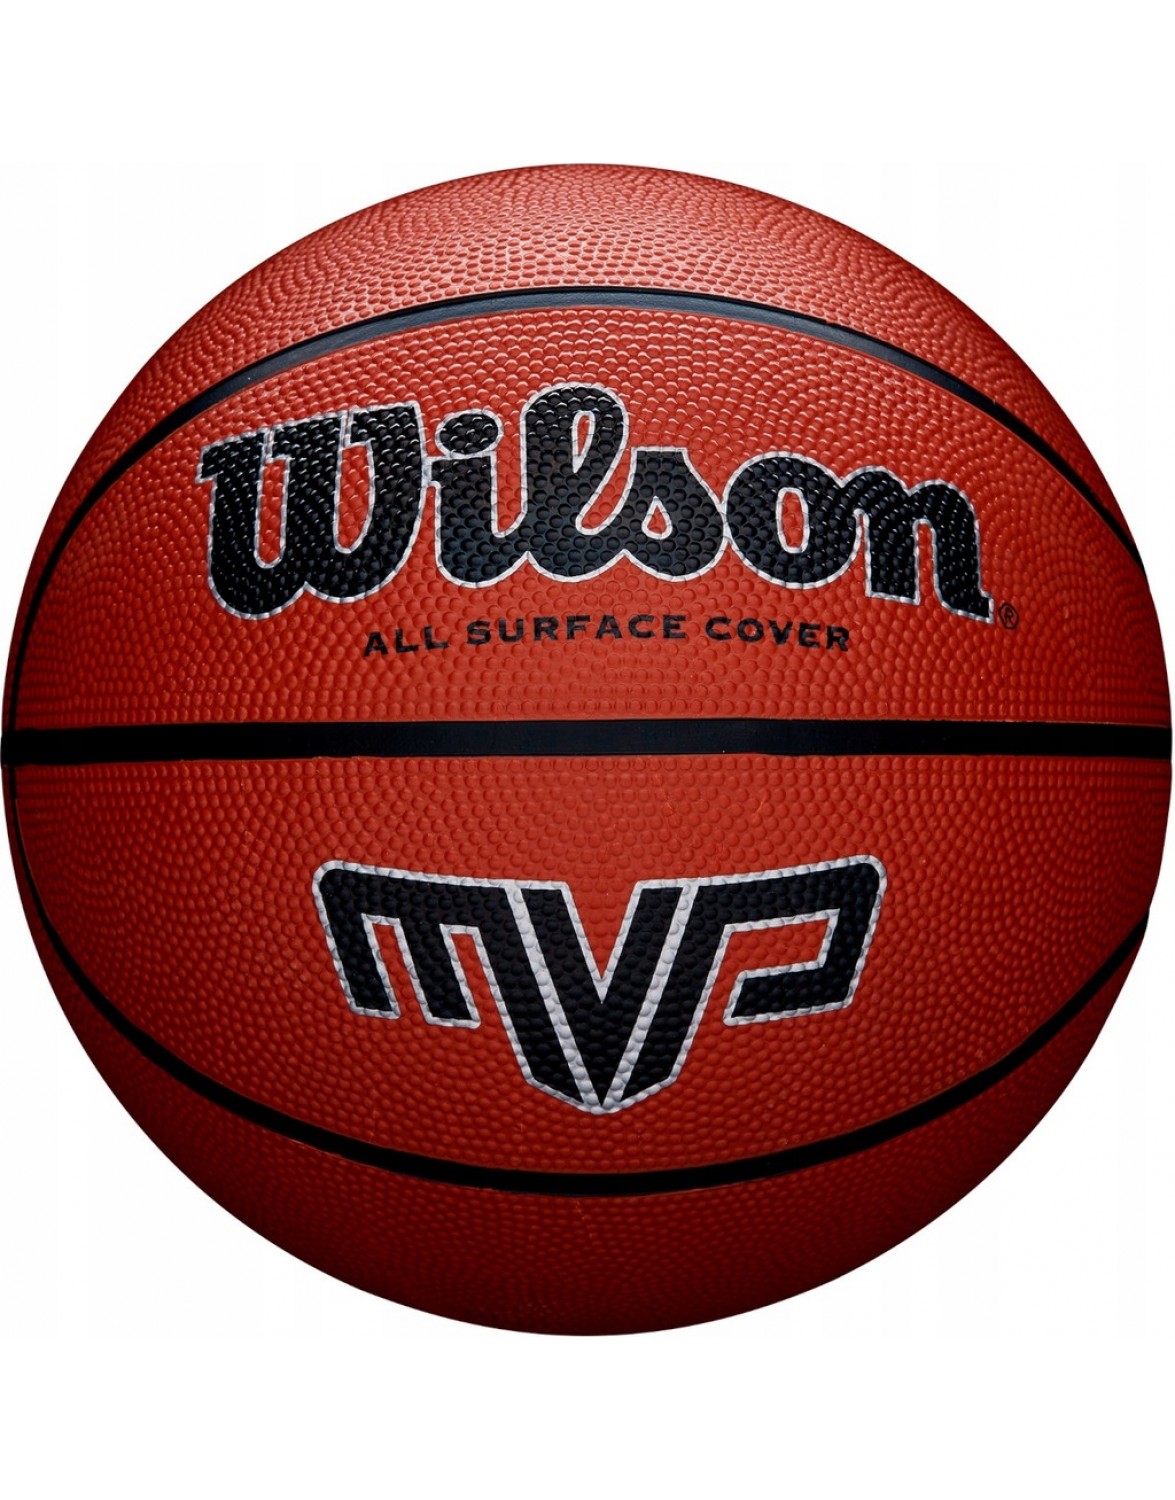 Баскетбольний м'яч Wilson MVP R. 7. WILSON MVP 7 БАСКЕТБОЛЬНИЙ М'ЯЧ ГУМОВИЙ СТРІТБОЛ